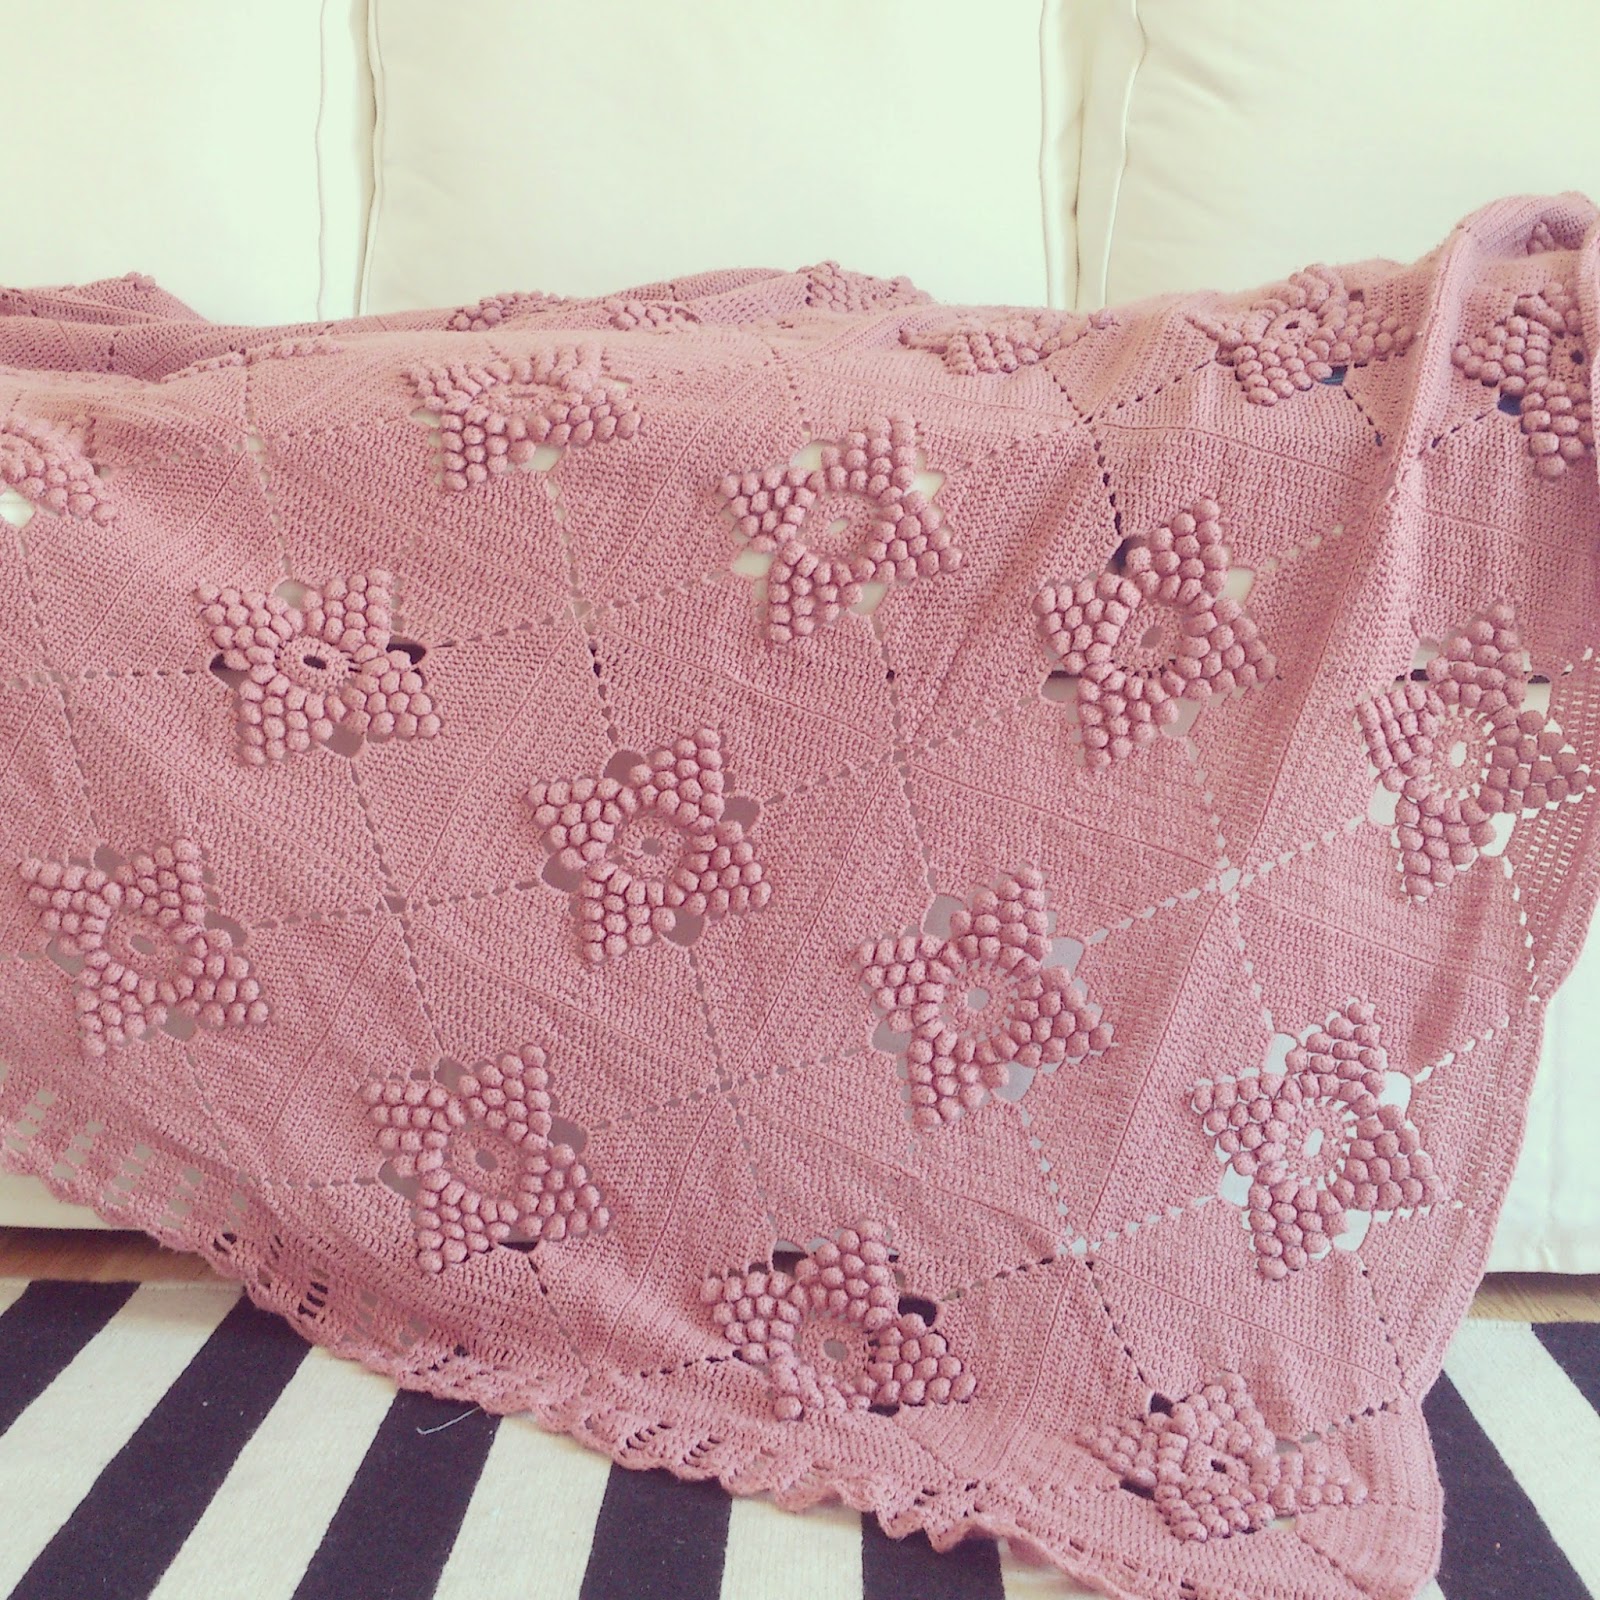 ByHaafner, vintage crochet blanket, pastel, pink, popcorn stitch